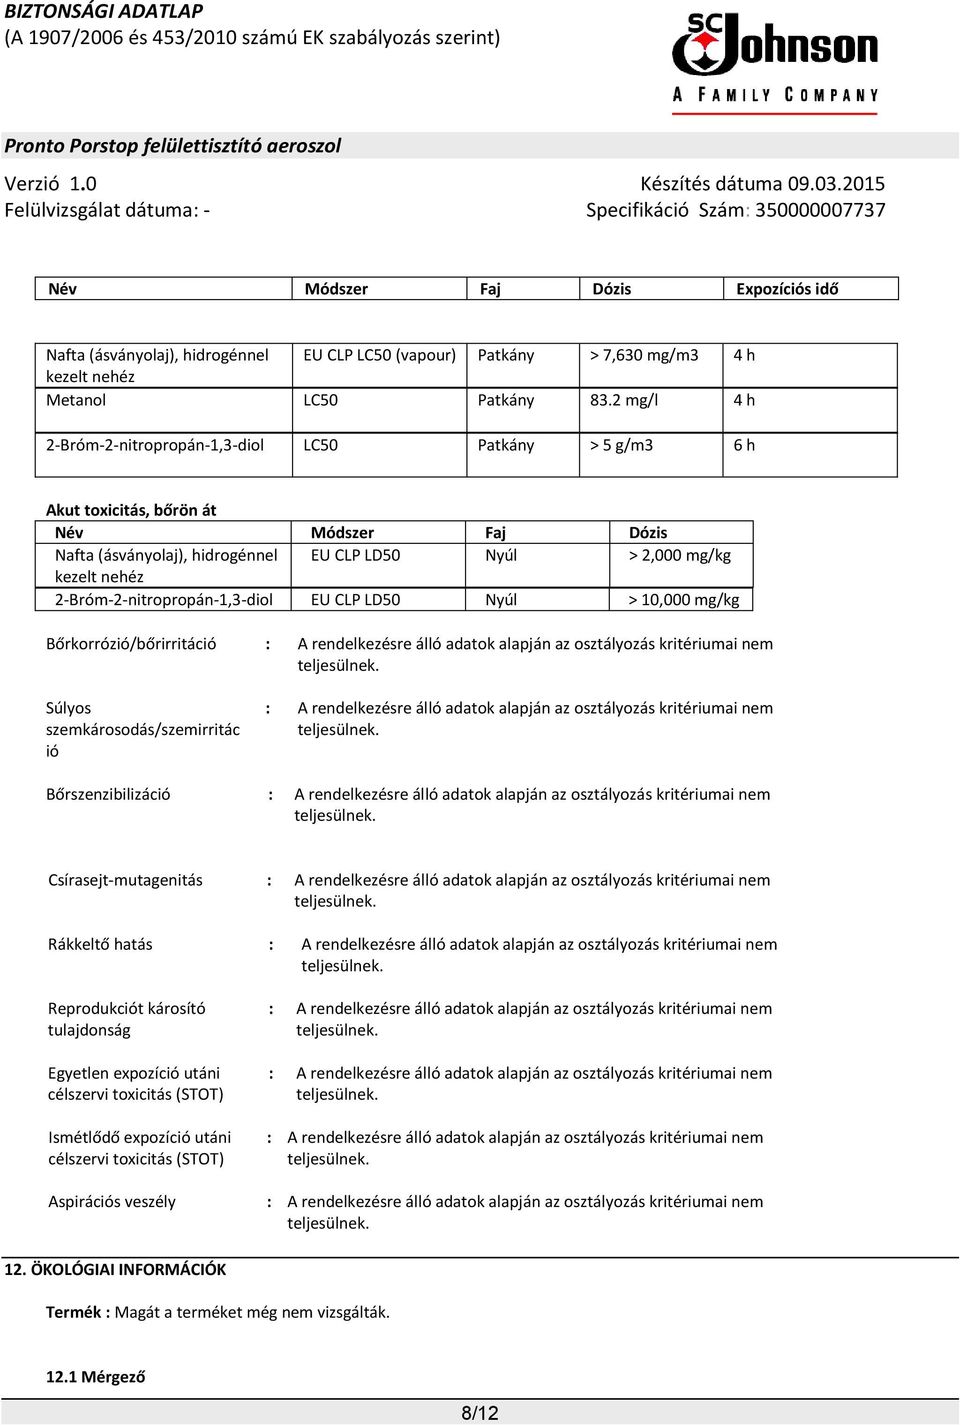 2-Bróm-2-nitropropán-1,3-diol EU CLP LD50 Nyúl > 10,000 mg/kg Bőrkorrózió/bőrirritáció : A rendelkezésre álló adatok alapján az osztályozás kritériumai nem Súlyos szemkárosodás/szemirritác ió : A